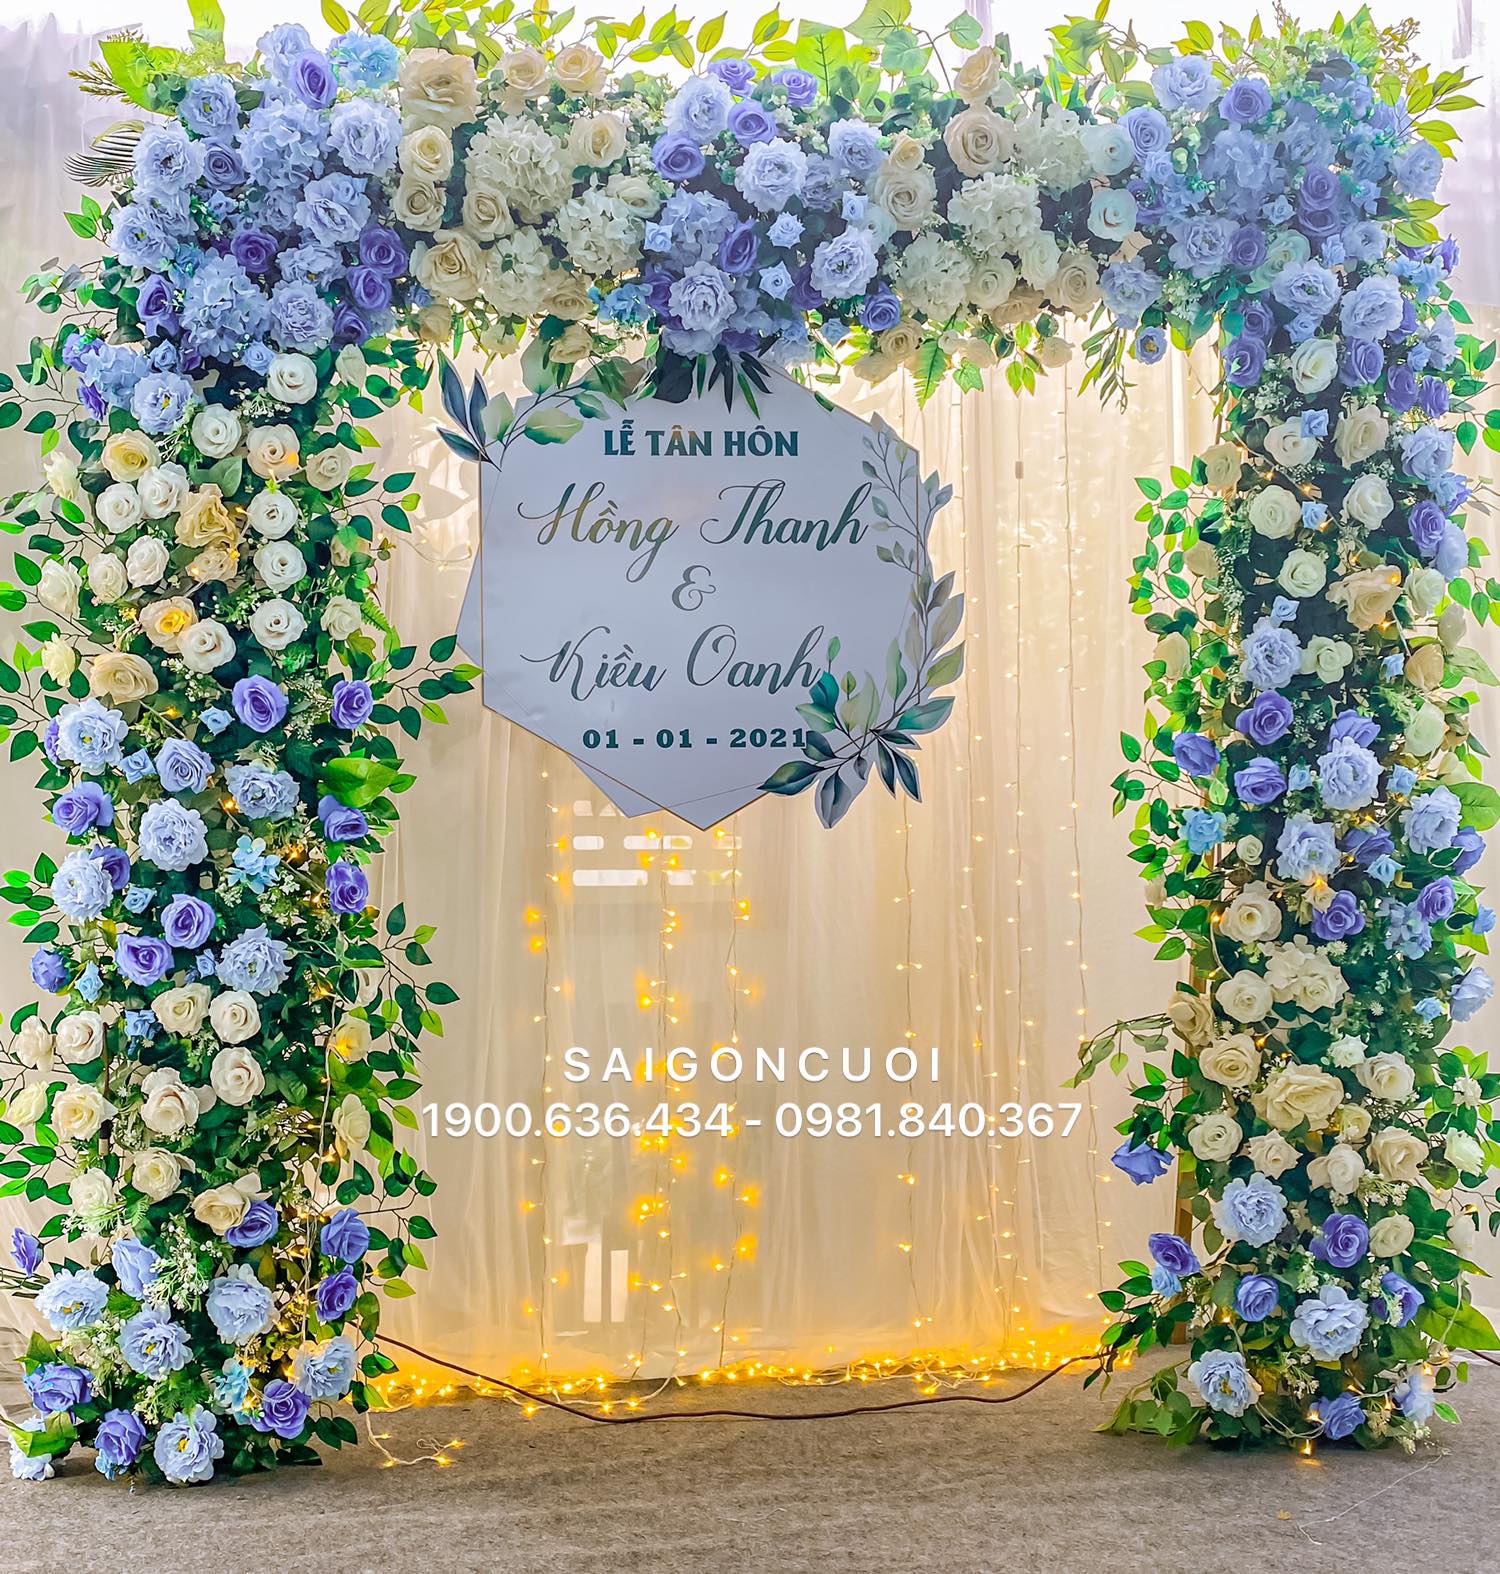 Cổng hoa cưới màu xanh với kết hợp nhiều hoa tươi đẹp rất độc đáo và thu hút